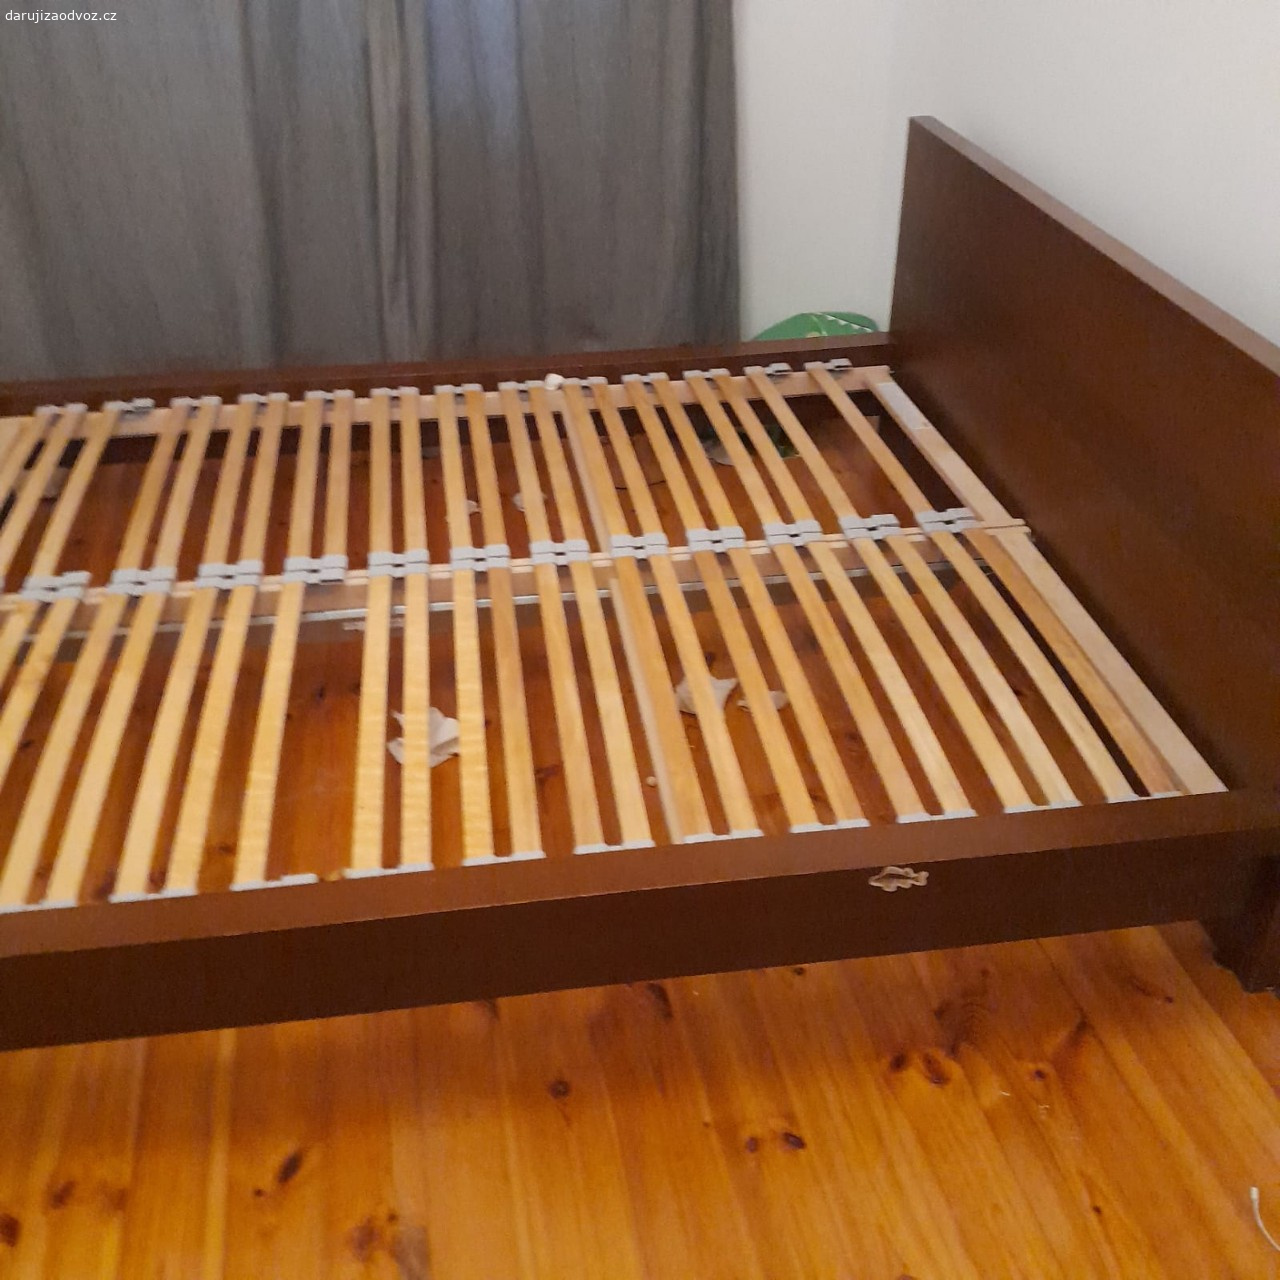 Daruji postel. daruji postel 200x160 rozměr matrace